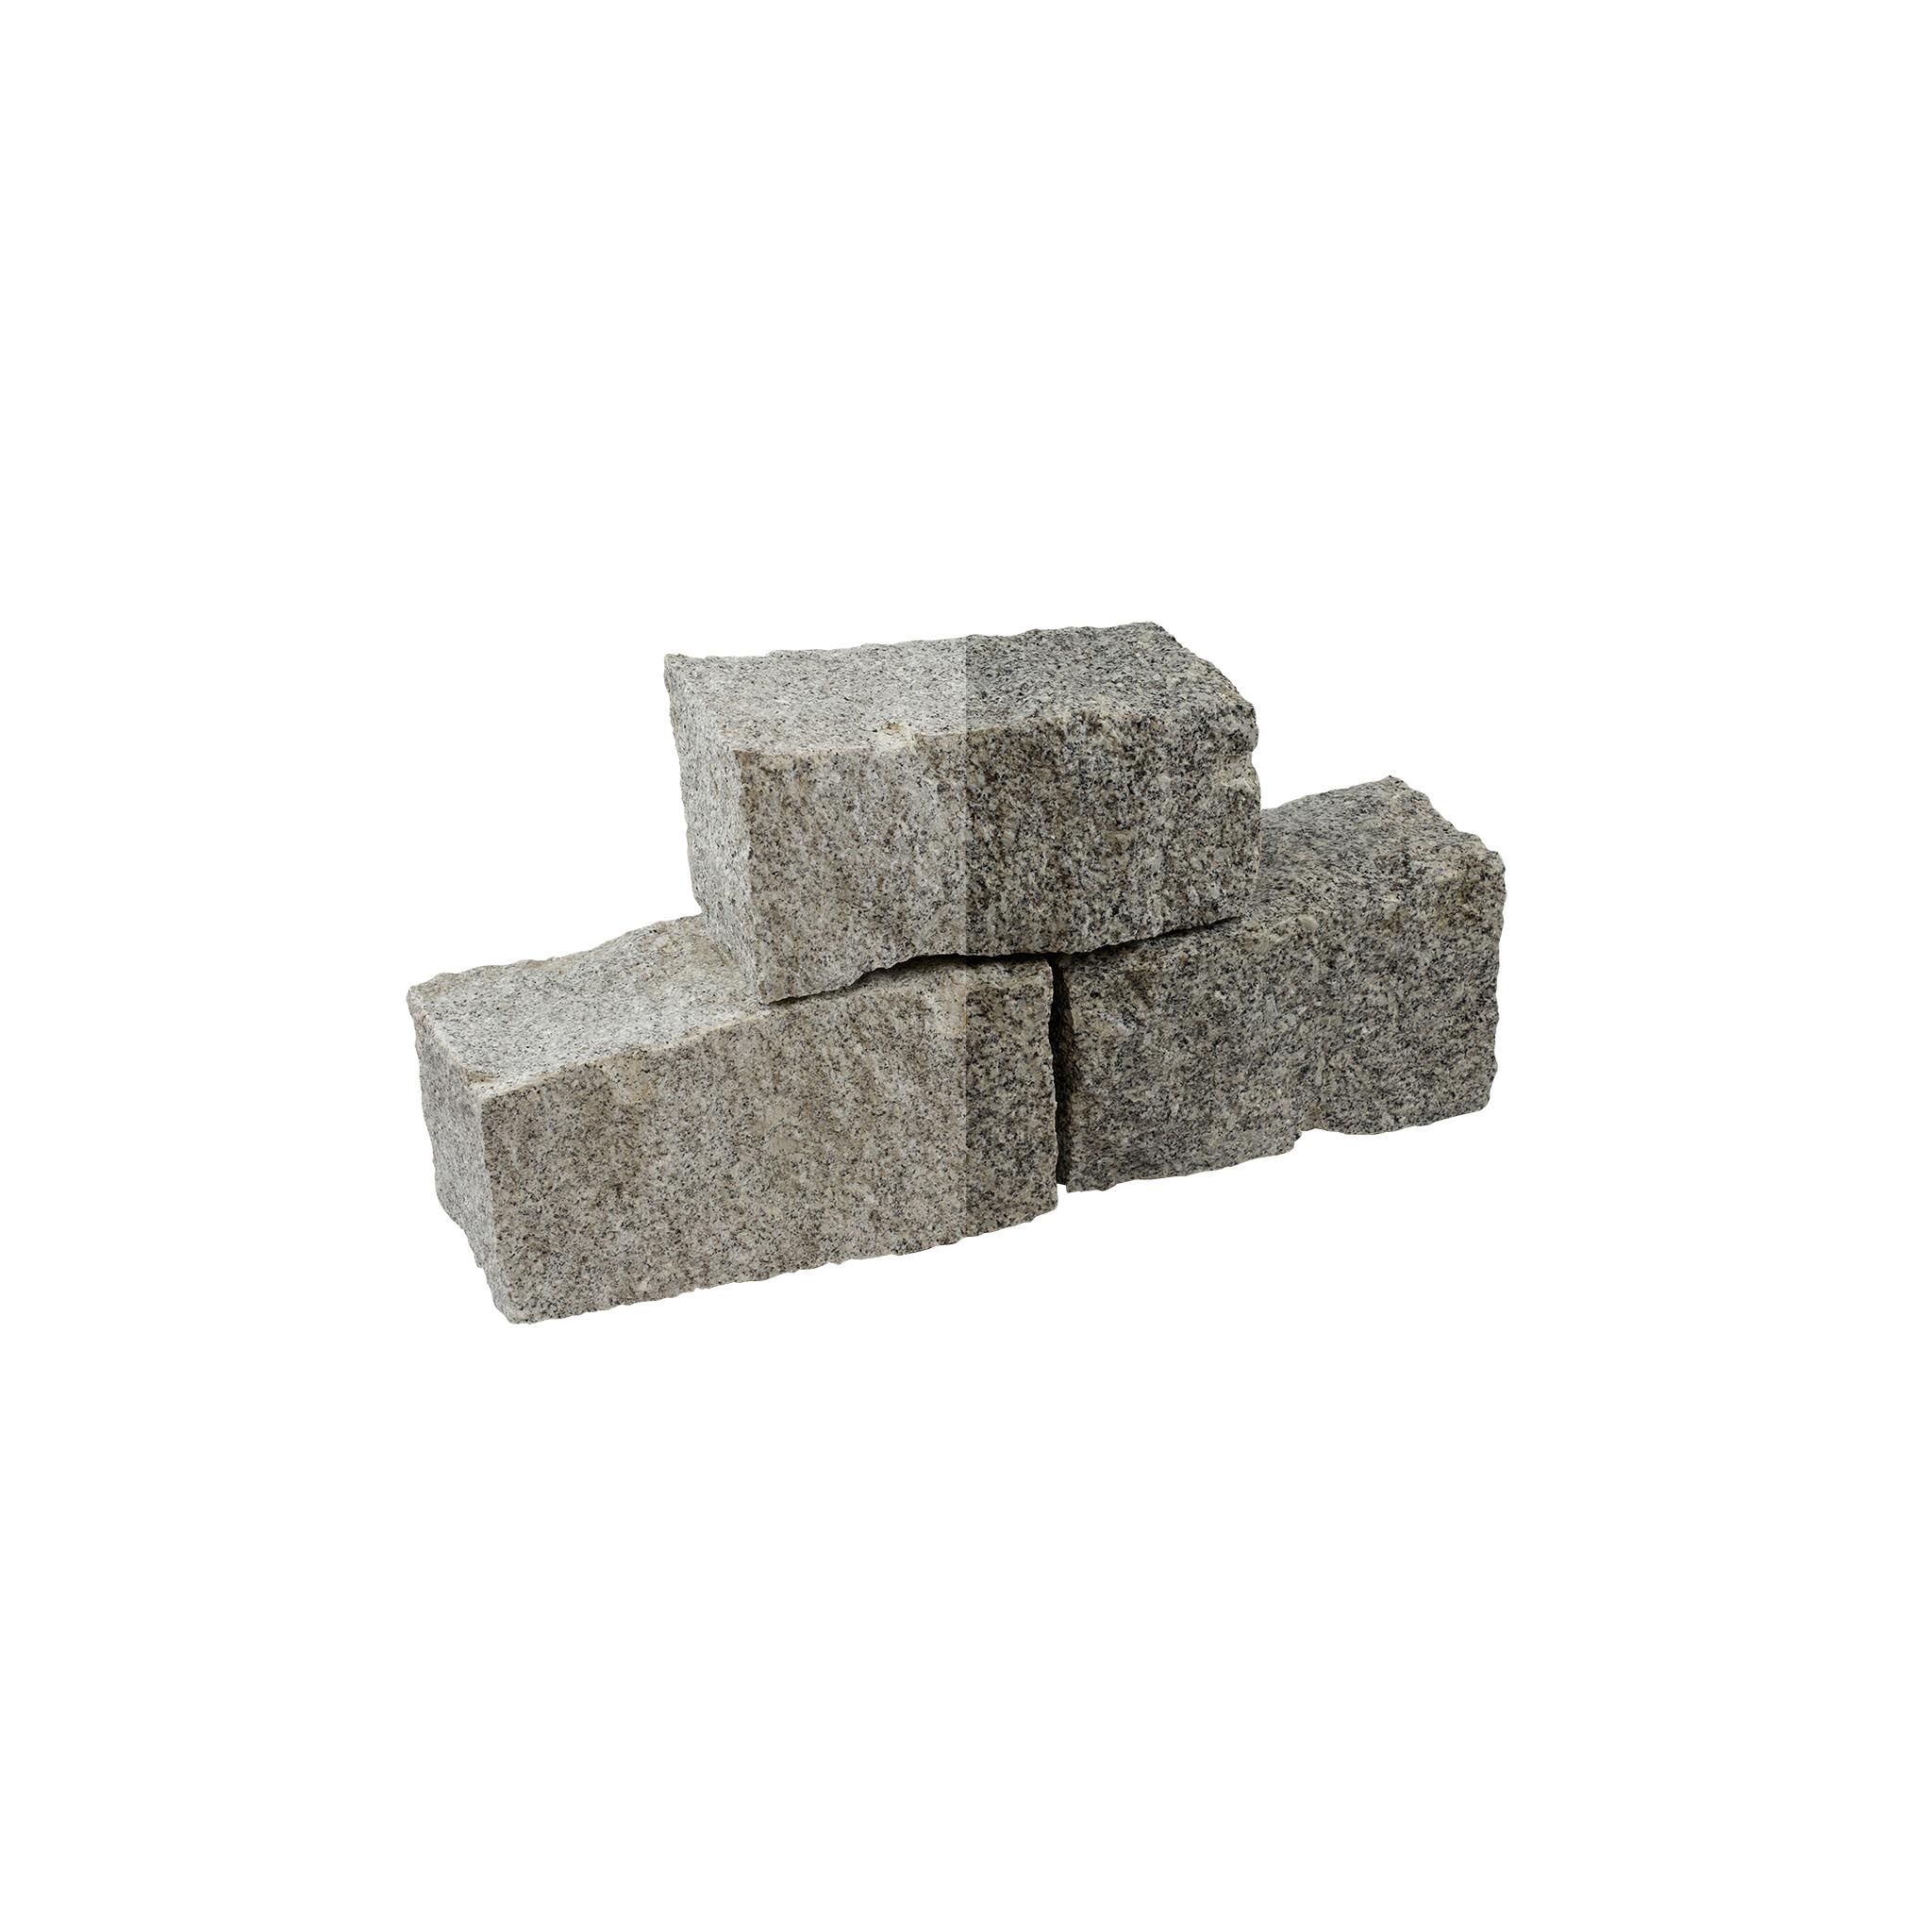 Mauersteine, Granit grau (Schlesisch) gespalten, Granit Mauerstein, 20 x 20 x 40 cm (+/- 3–5 cm), (grau), allseitig gespalten